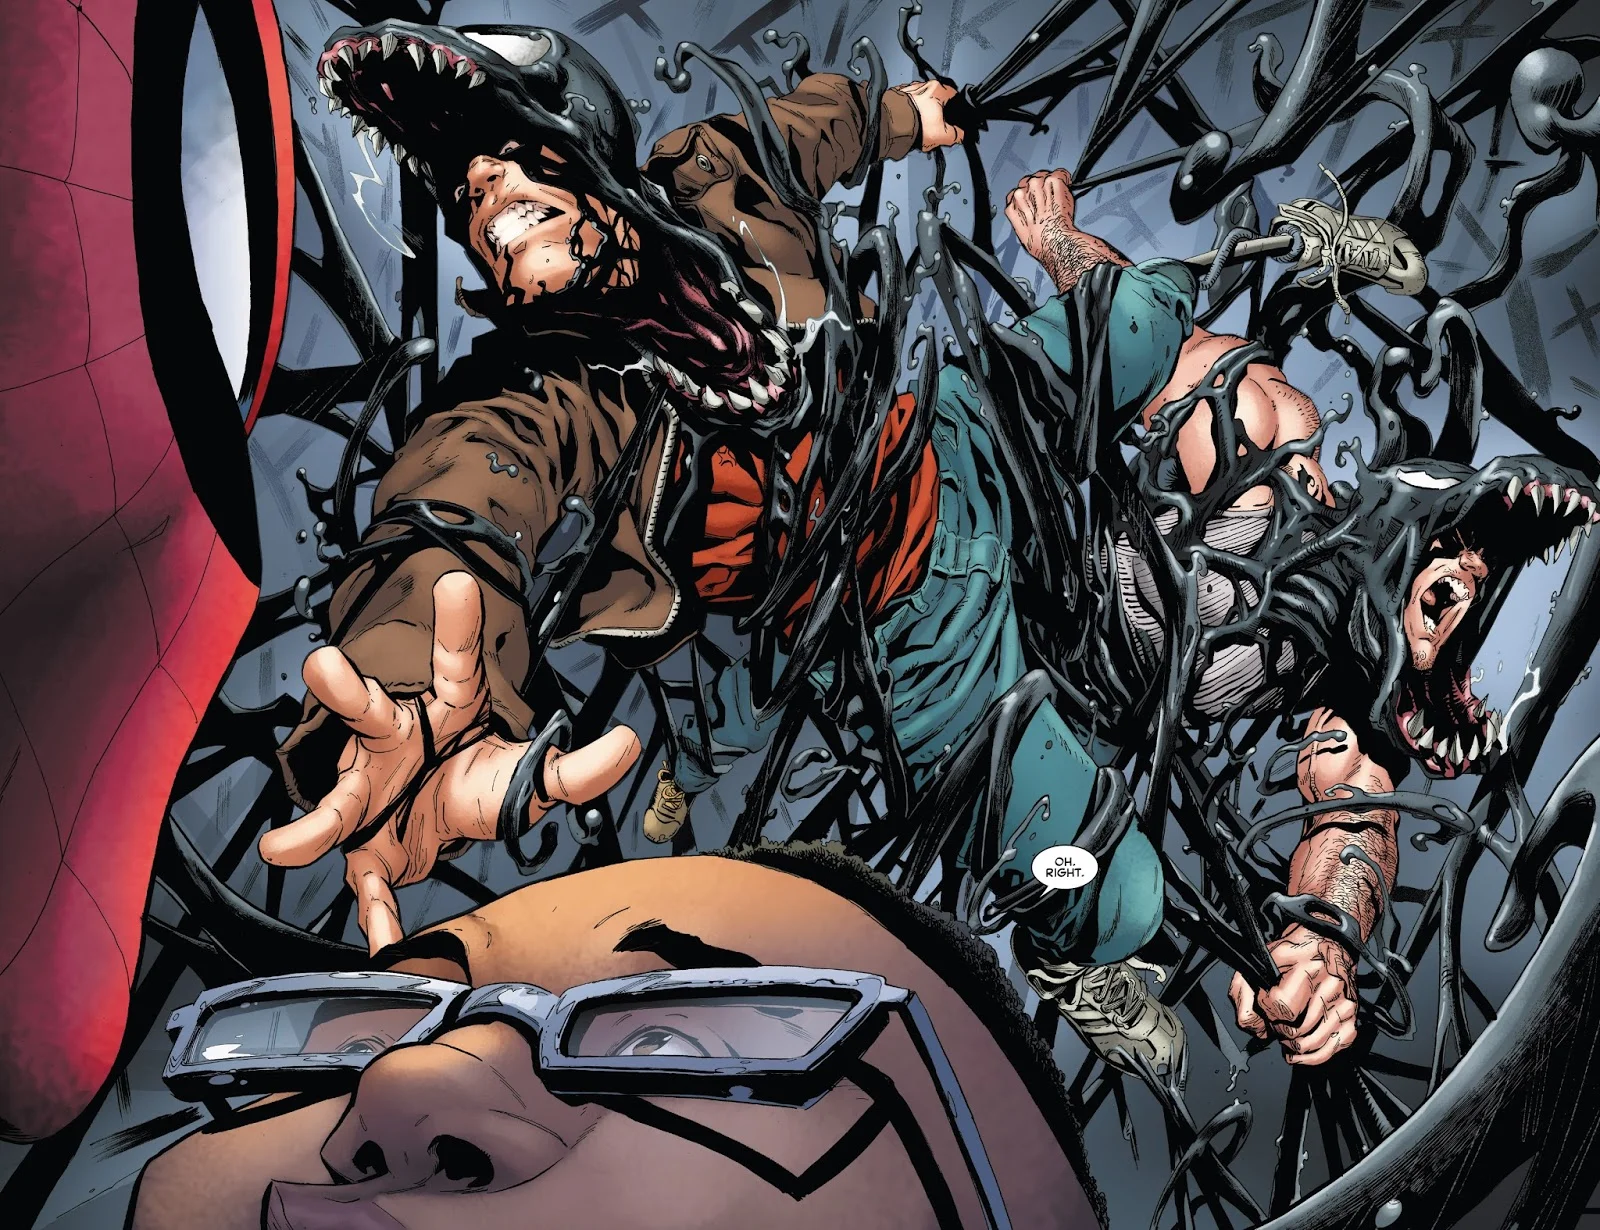 17 января закончился кроссовер Venom Inc., на страницах которого собралась довольно неожиданная команда из бывших владельцев симбиота Венома. Питер Паркер, Эдди Брок и Флэш Томпсон объединились, чтобы остановить Ли Прайса, похитившего симбиота у протеже Томпсона. О том, стоит ли читать этот комикс, мы расскажем в этой статье.